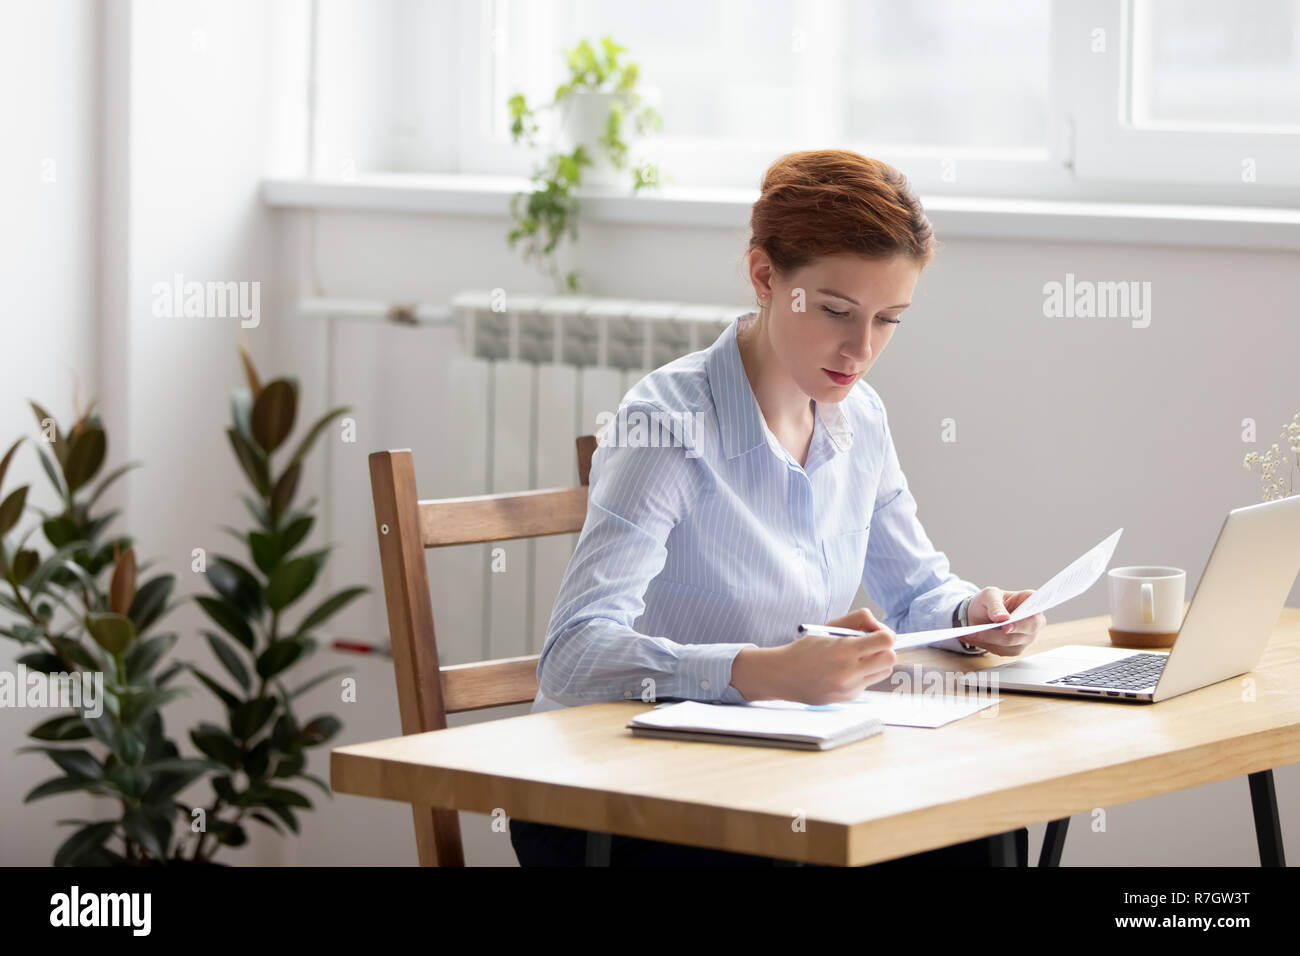 L'accent woman sitting at desk groupe de contrôle des données dans les documents Banque D'Images